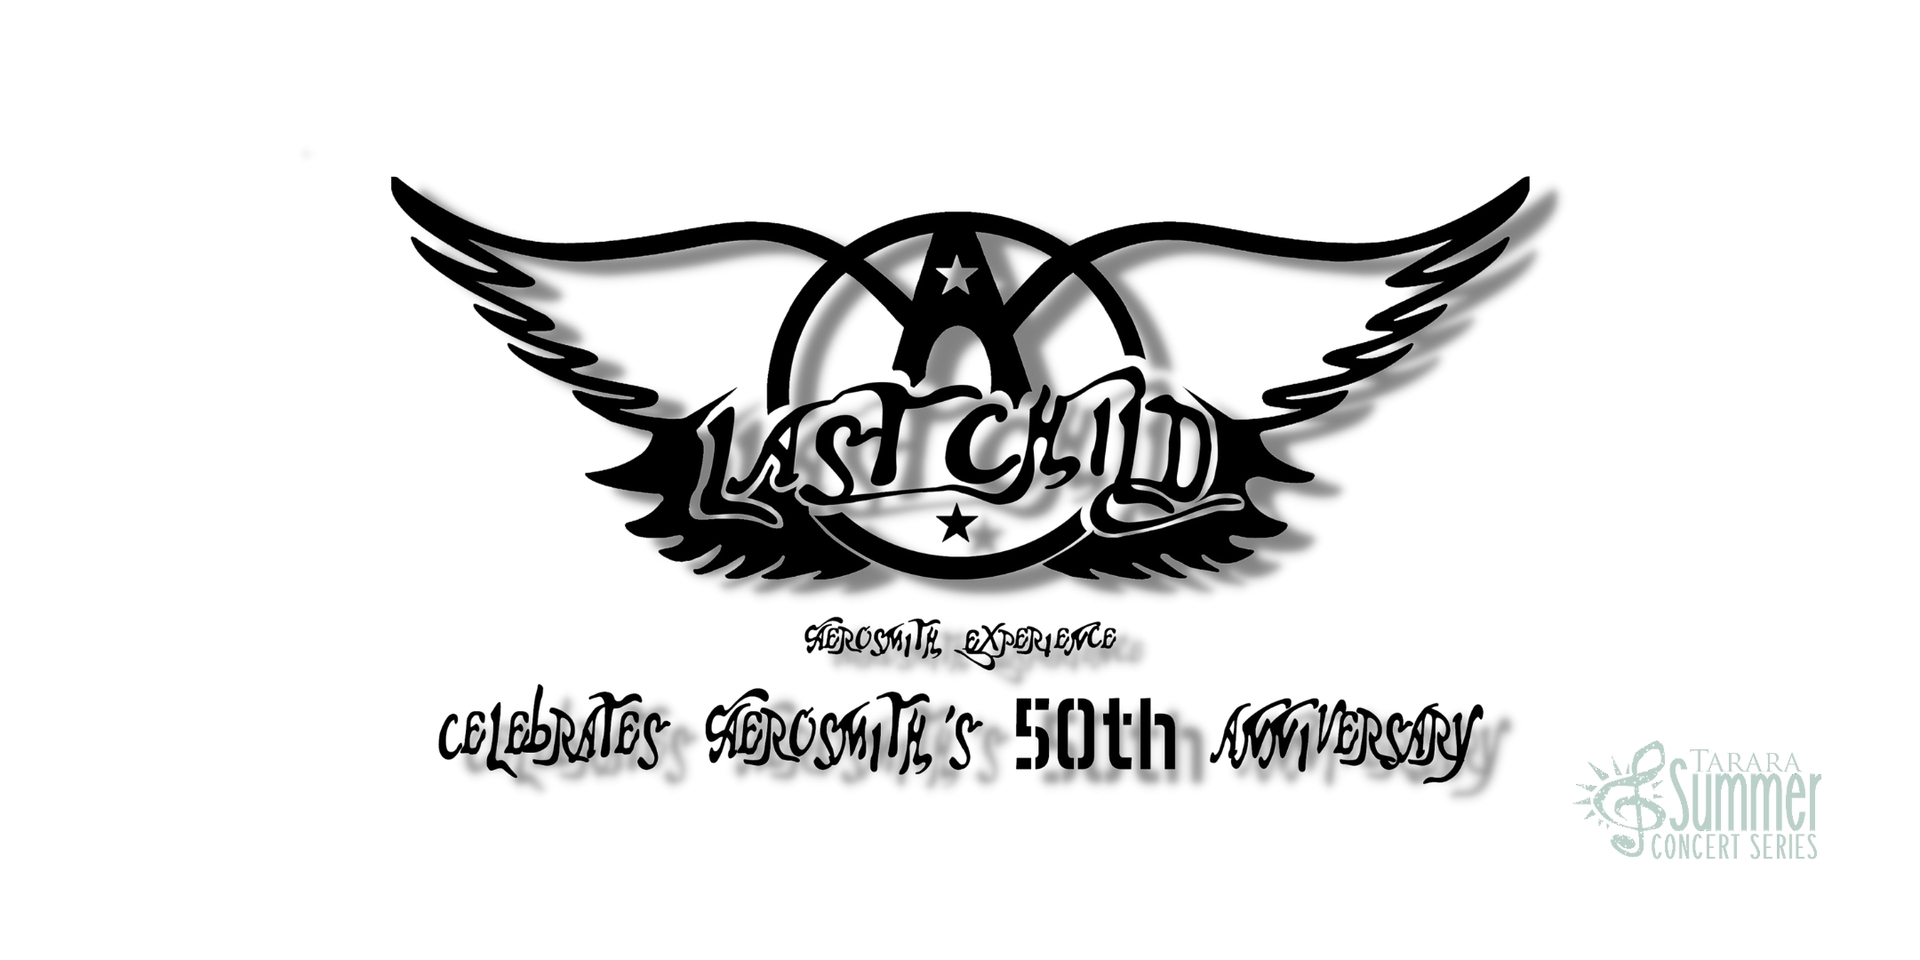 Last Child - Aerosmith Experience, Leesburg, Virginia, United States